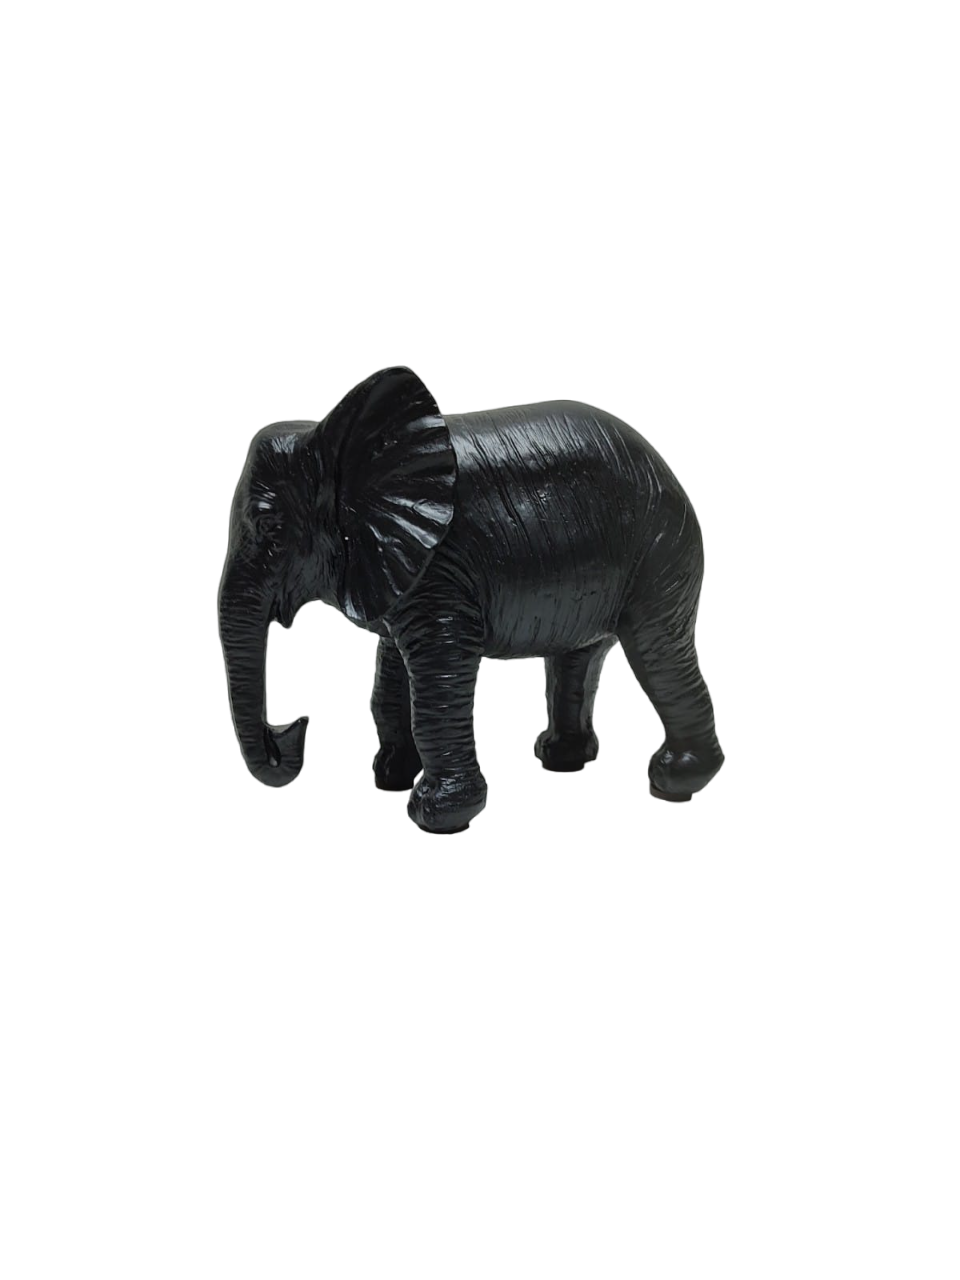 Elefante de peça de xadrez de perto